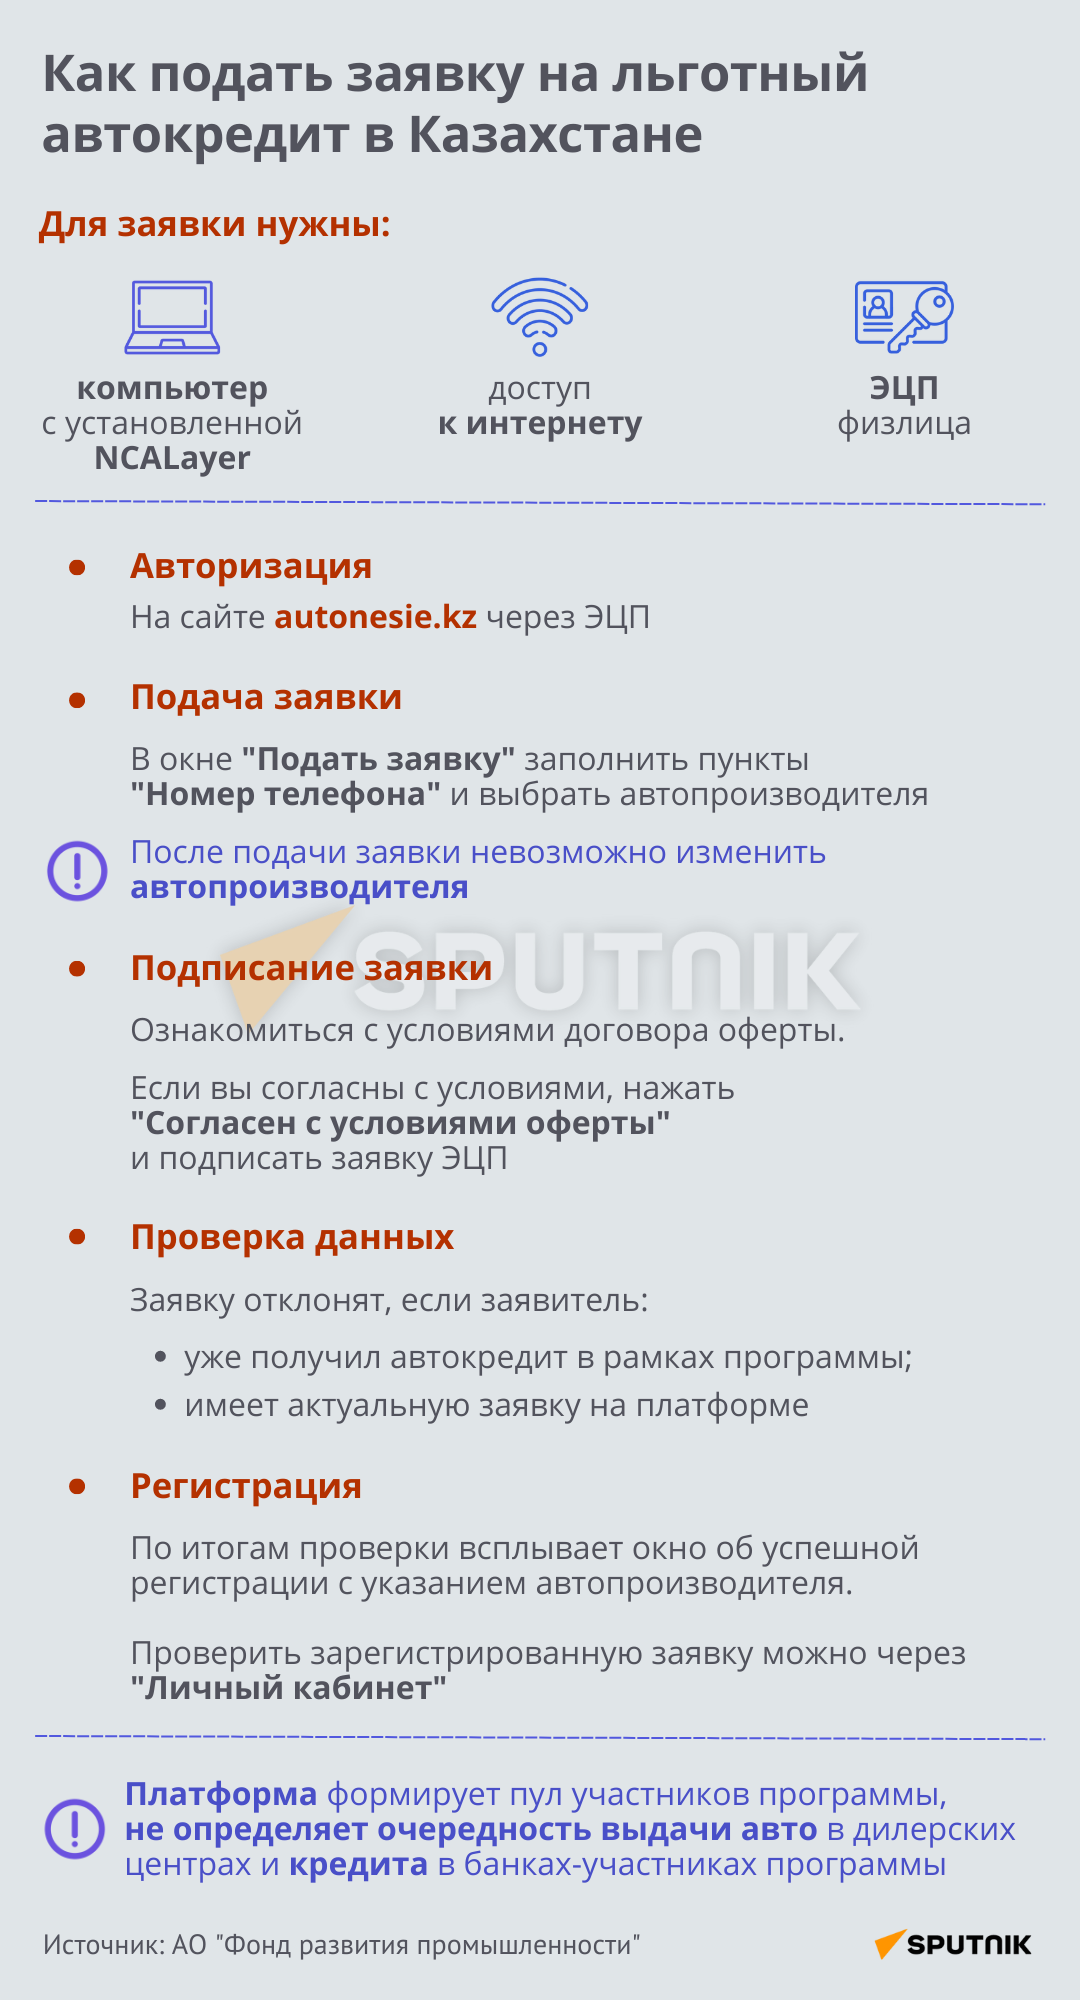 Как подать заявку на льготный автокредит в Казахстане - Sputnik Казахстан